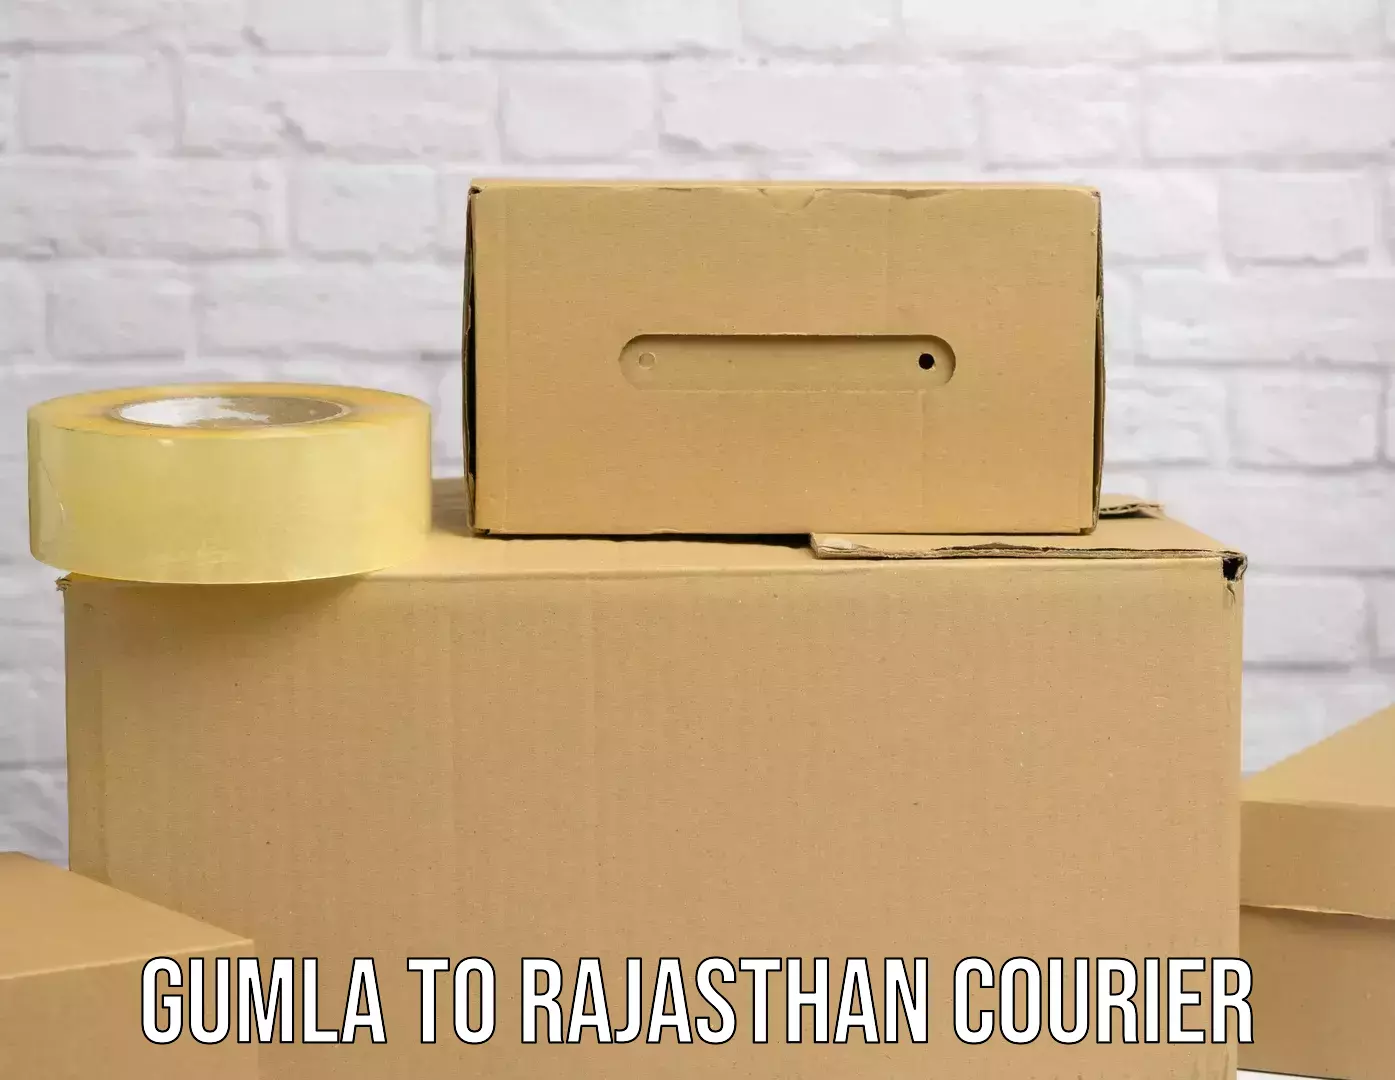 Package delivery network Gumla to Malpura